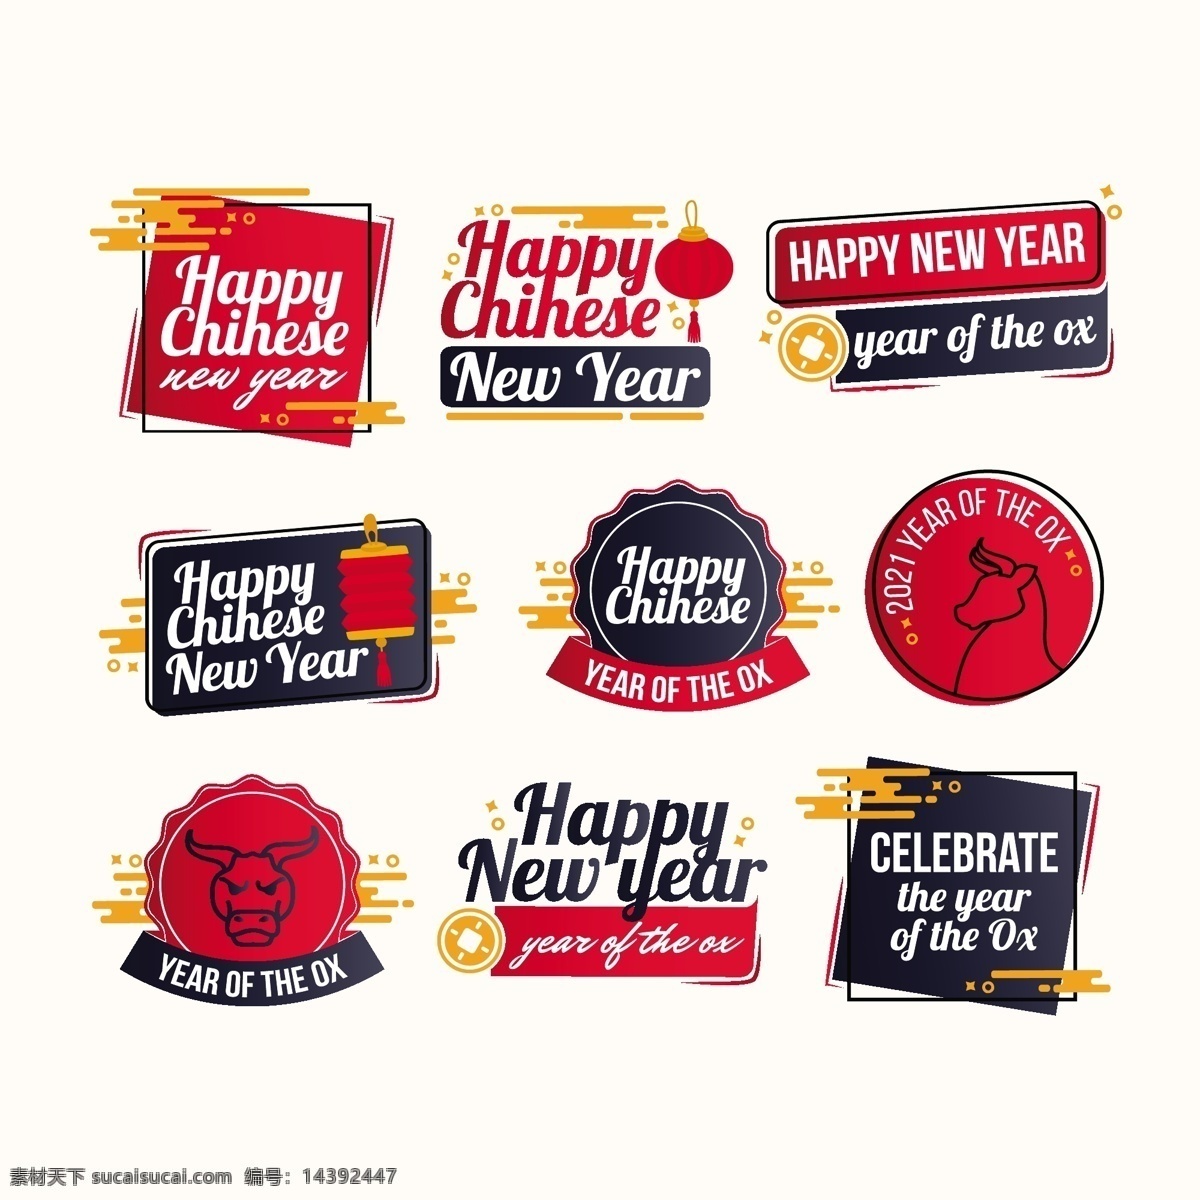 新年标签图片 新年标签 新年标志 新年促销 新年背景 新年 海报 中国年 新年快乐 中国元素 节日 元旦 新春快乐 2021